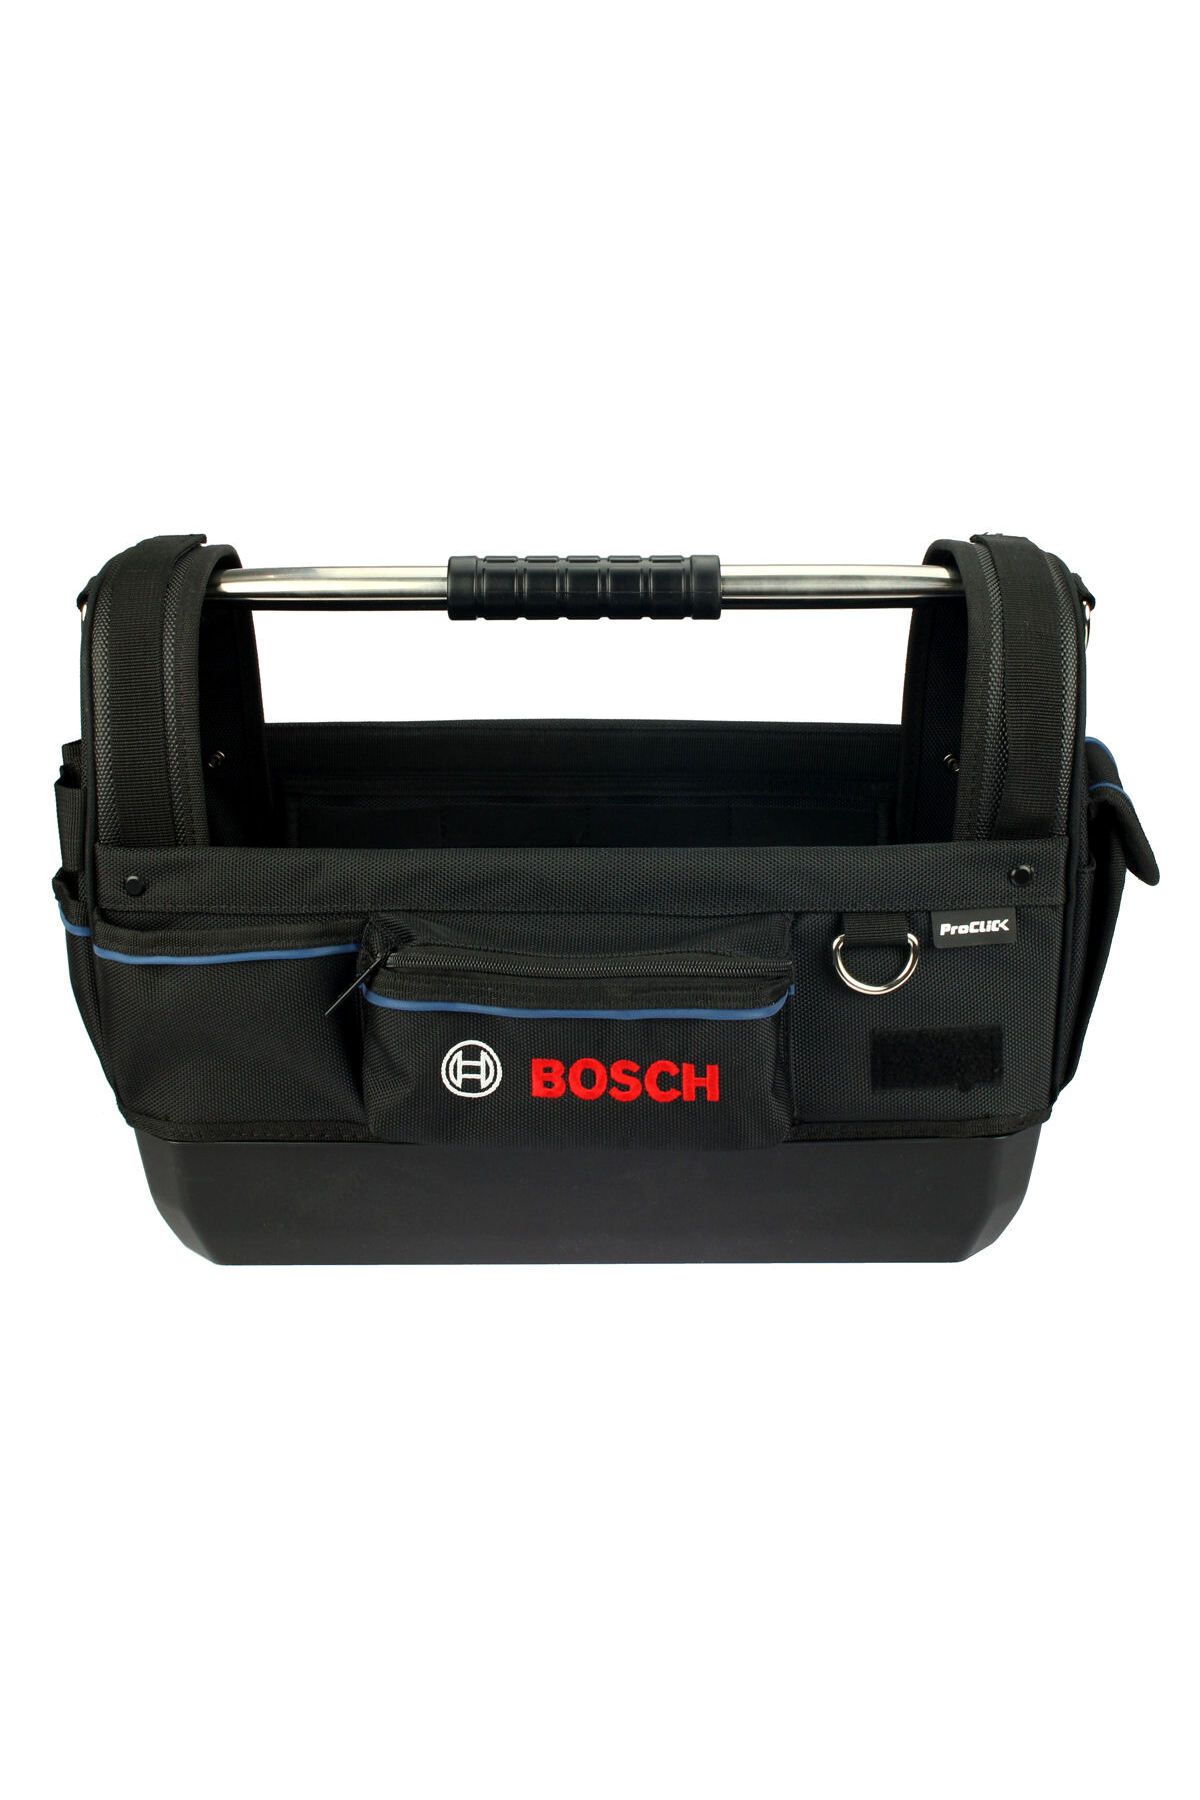 Bosch Alet Çantası Gwt 20